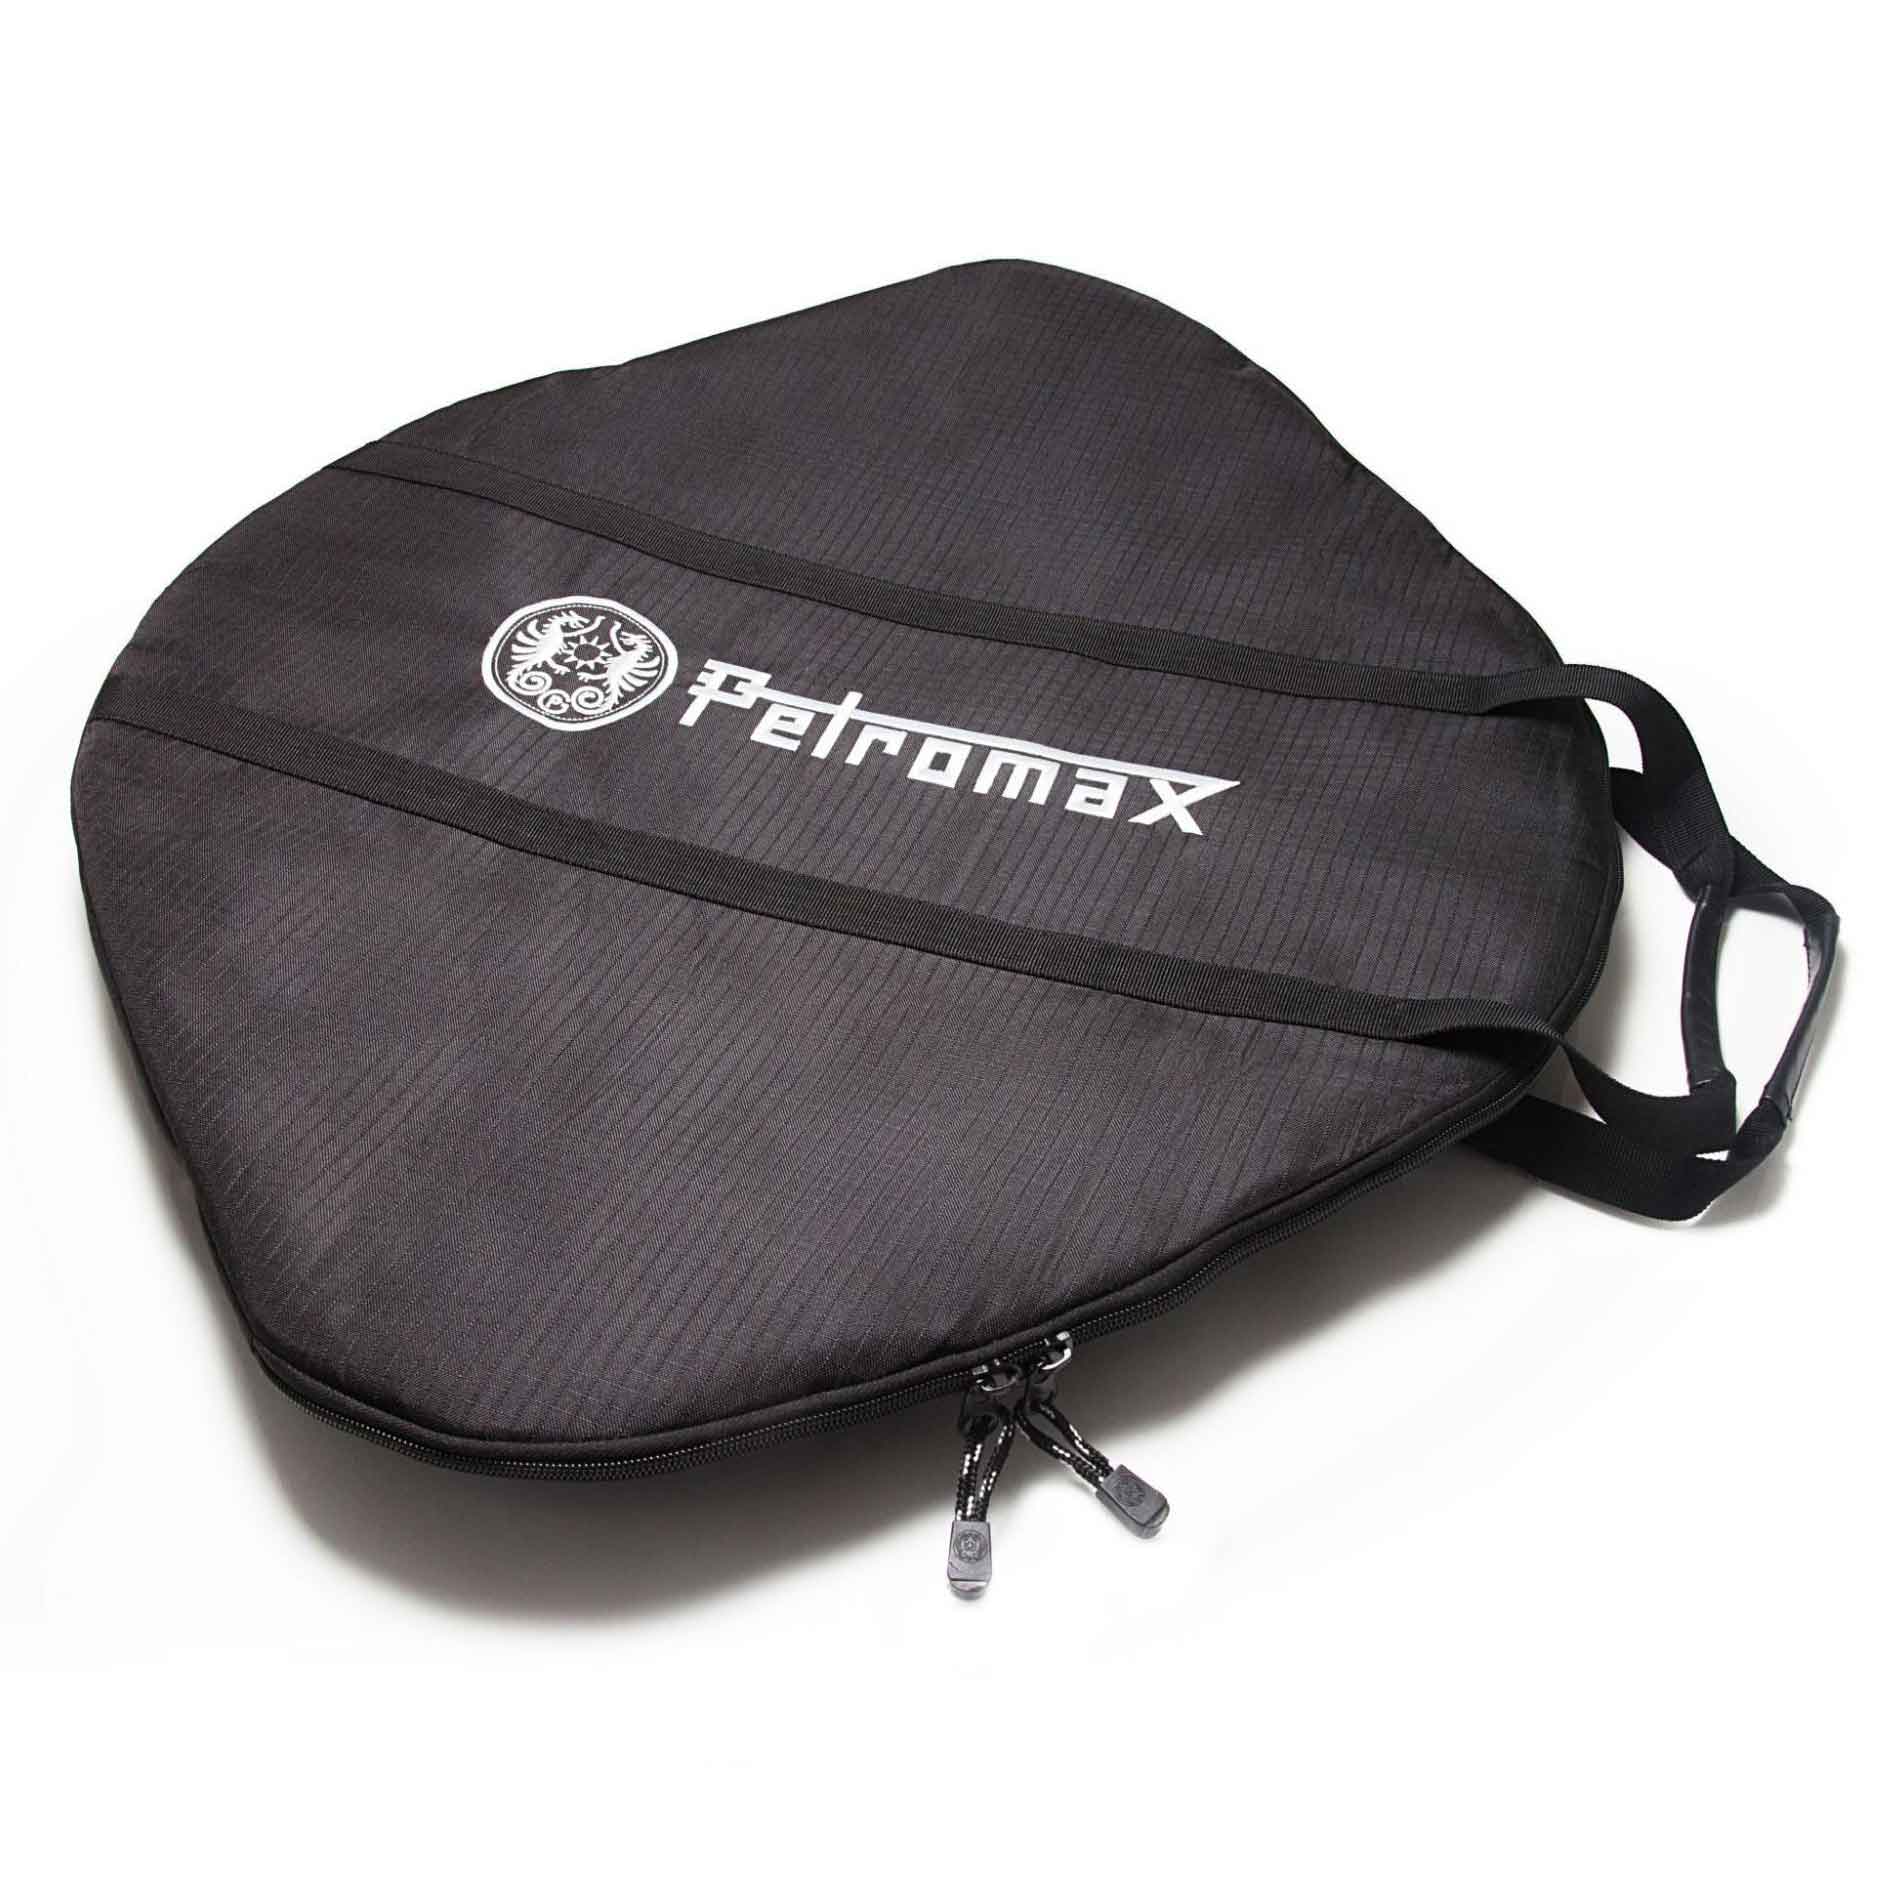 Petromax Tasche für Grill- & Feuerschale fs48